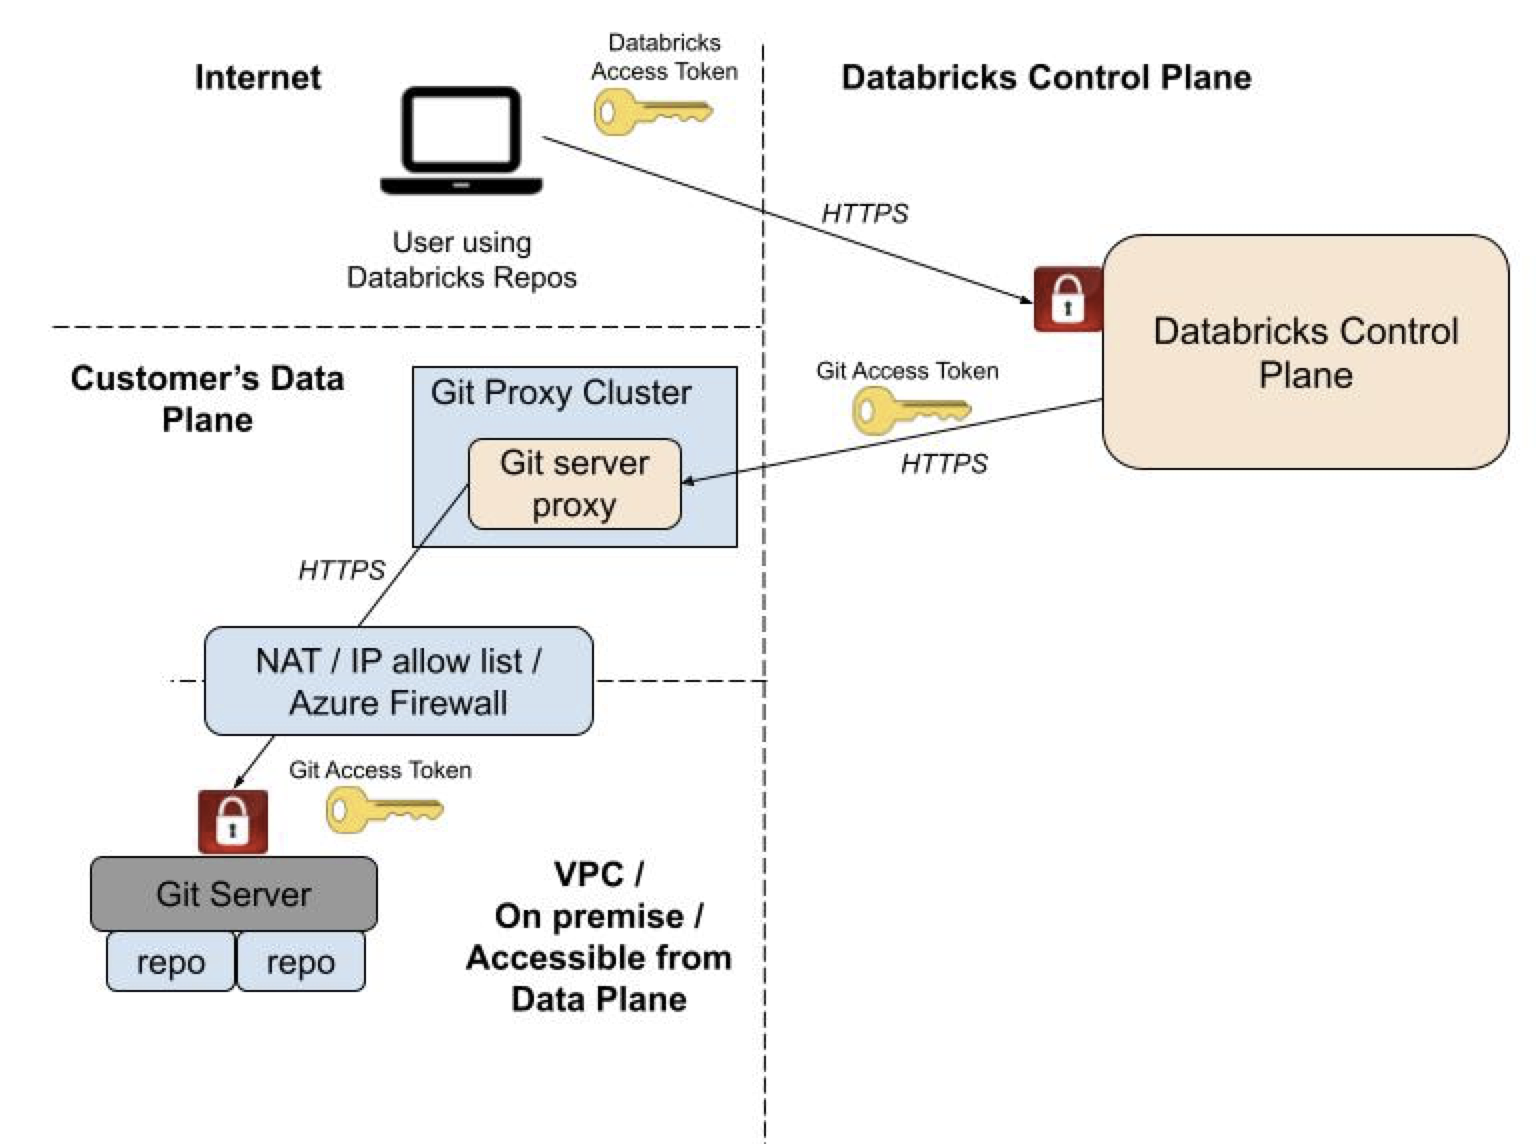 رسم تخطيطي يوضح كيفية تكوين Git Server Proxy لمجلدات Databricks Git للتشغيل من مستوى حساب العميل